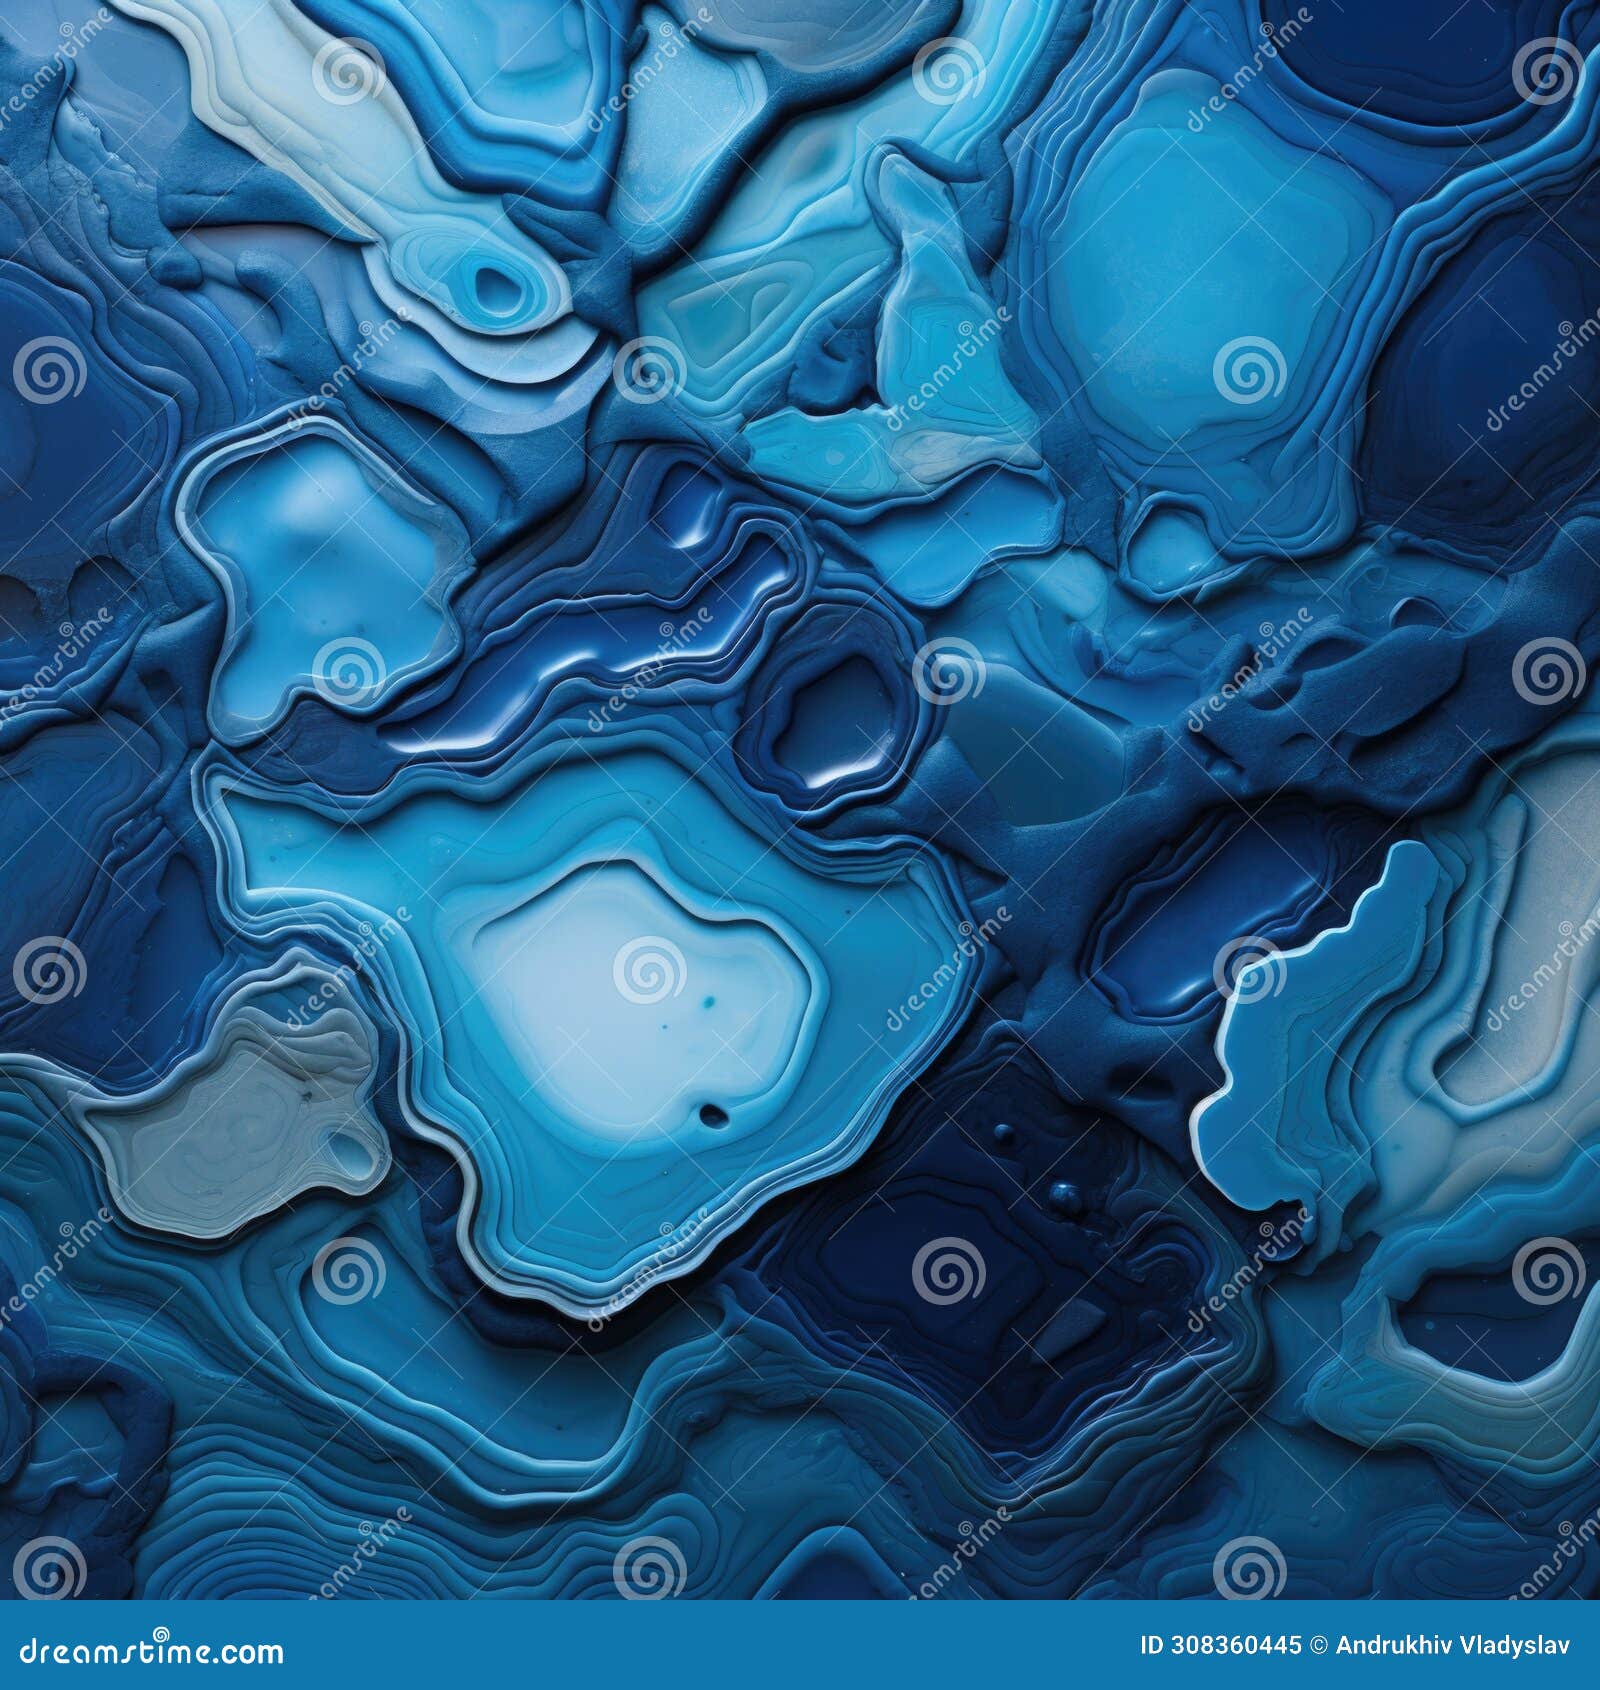 fondo abstracto con formas sinuosas y textura de piedra liquida de tonos azules